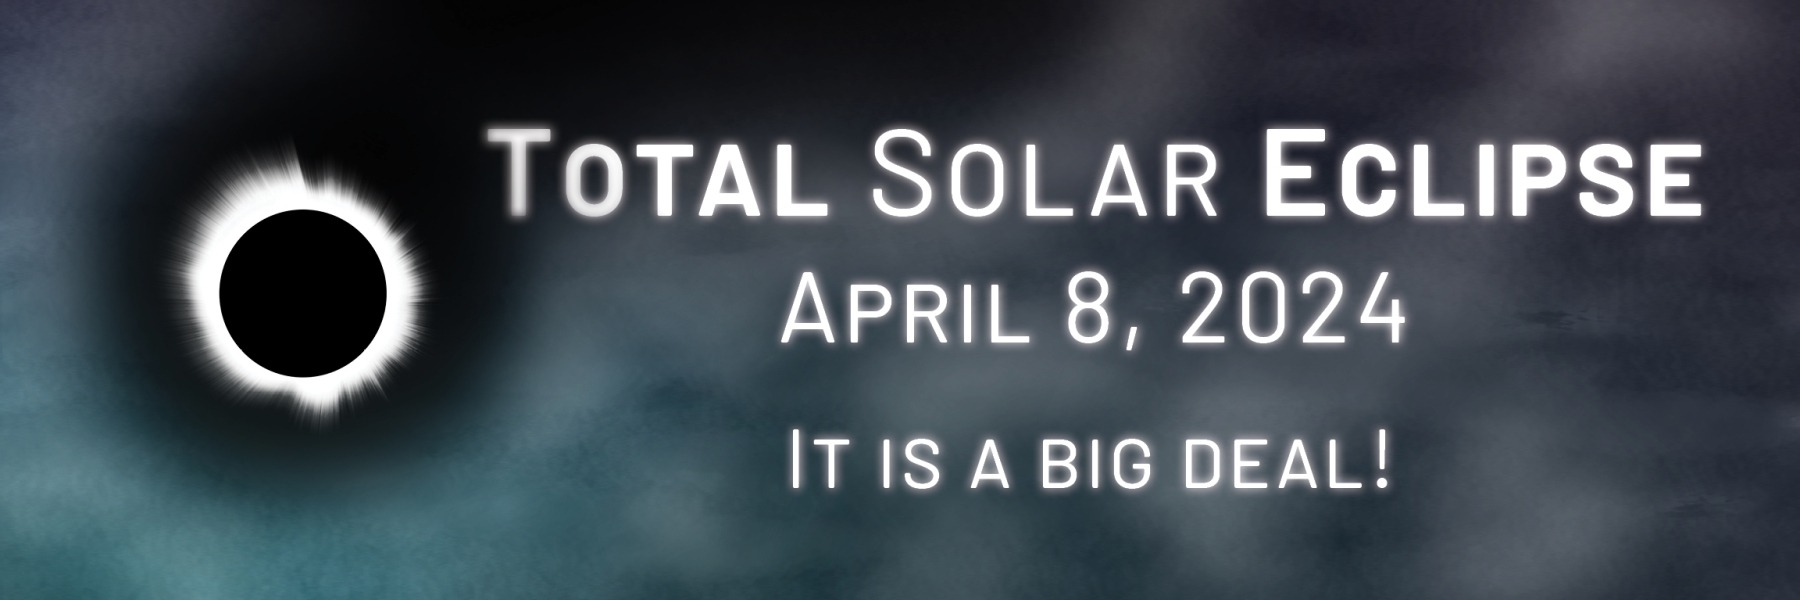 Total Solar Eclipse April 8, 2024